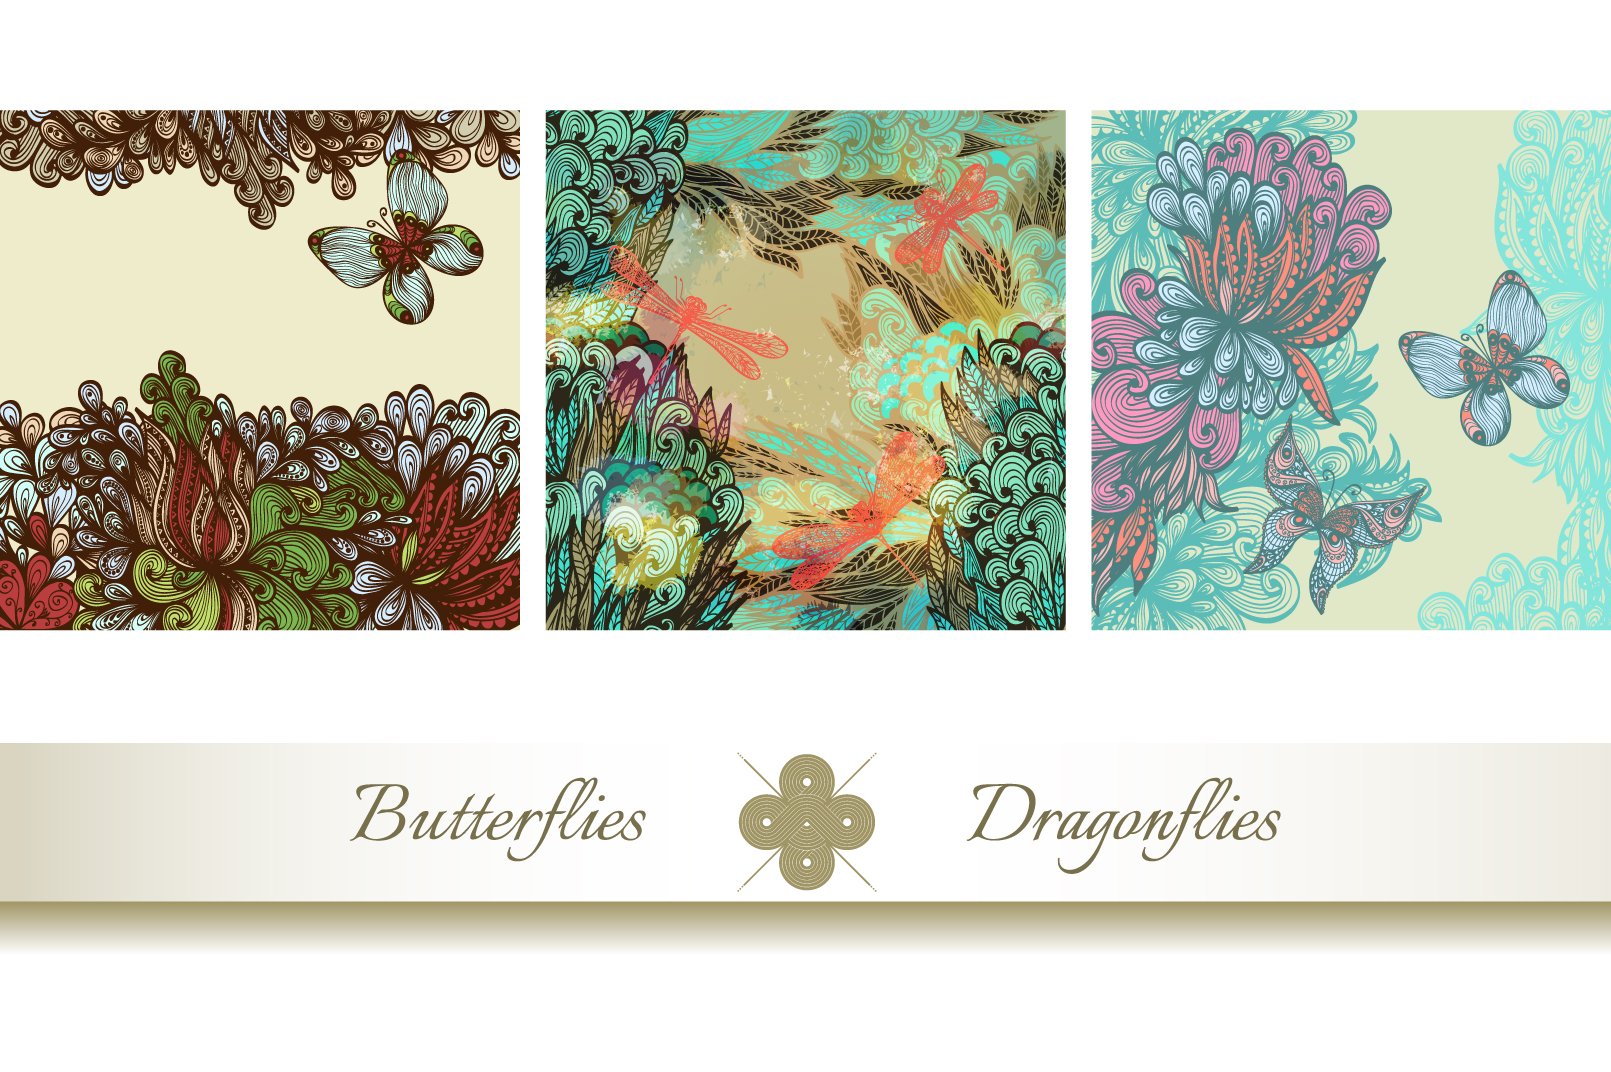 Butterflies and Dragonflies.